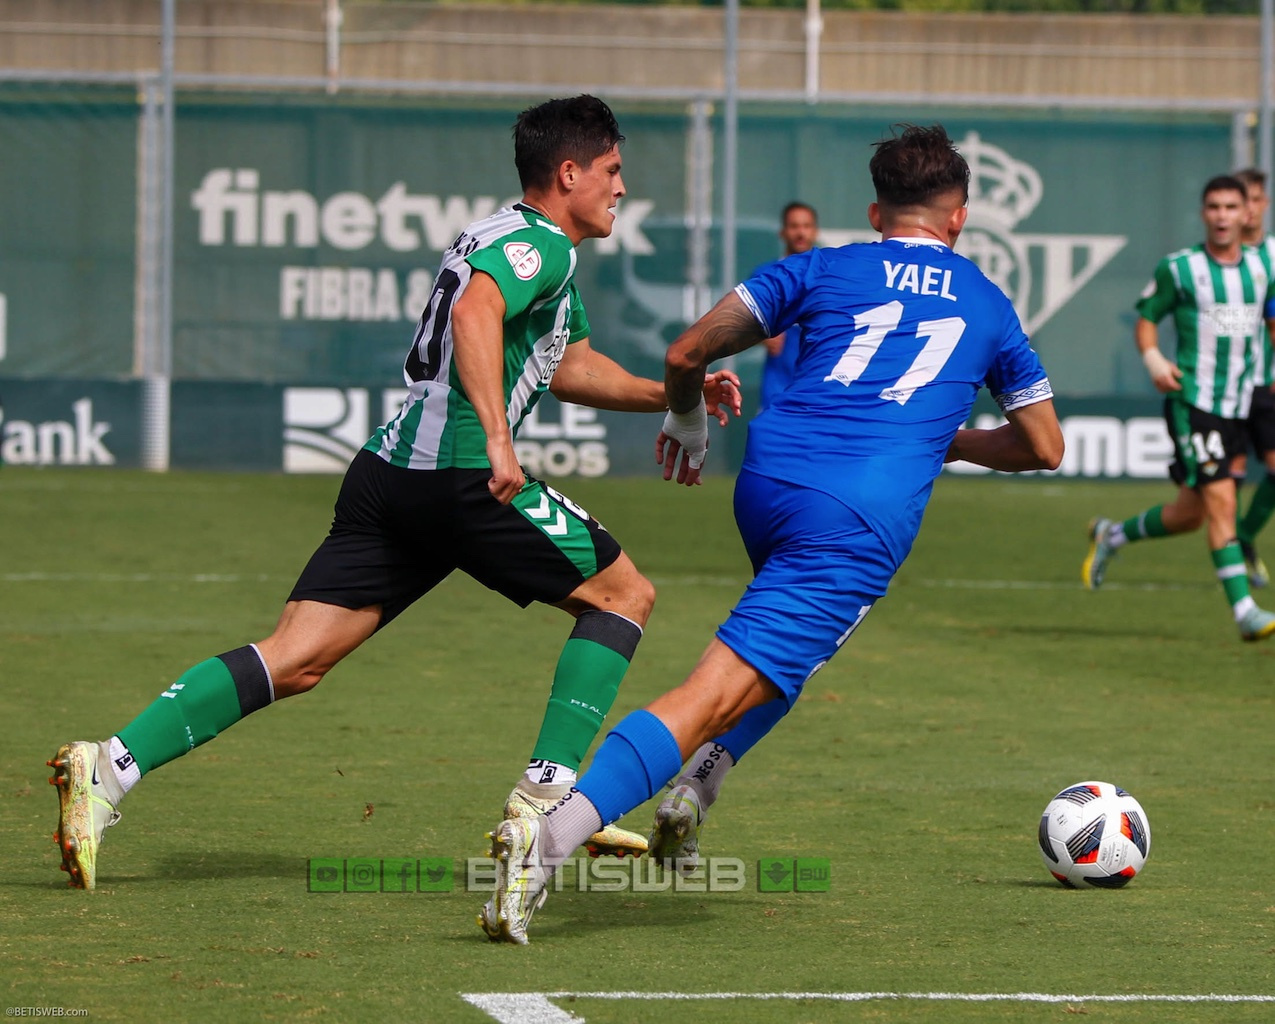 J-6-Betis-Deportivo-vs-Velez-CF392